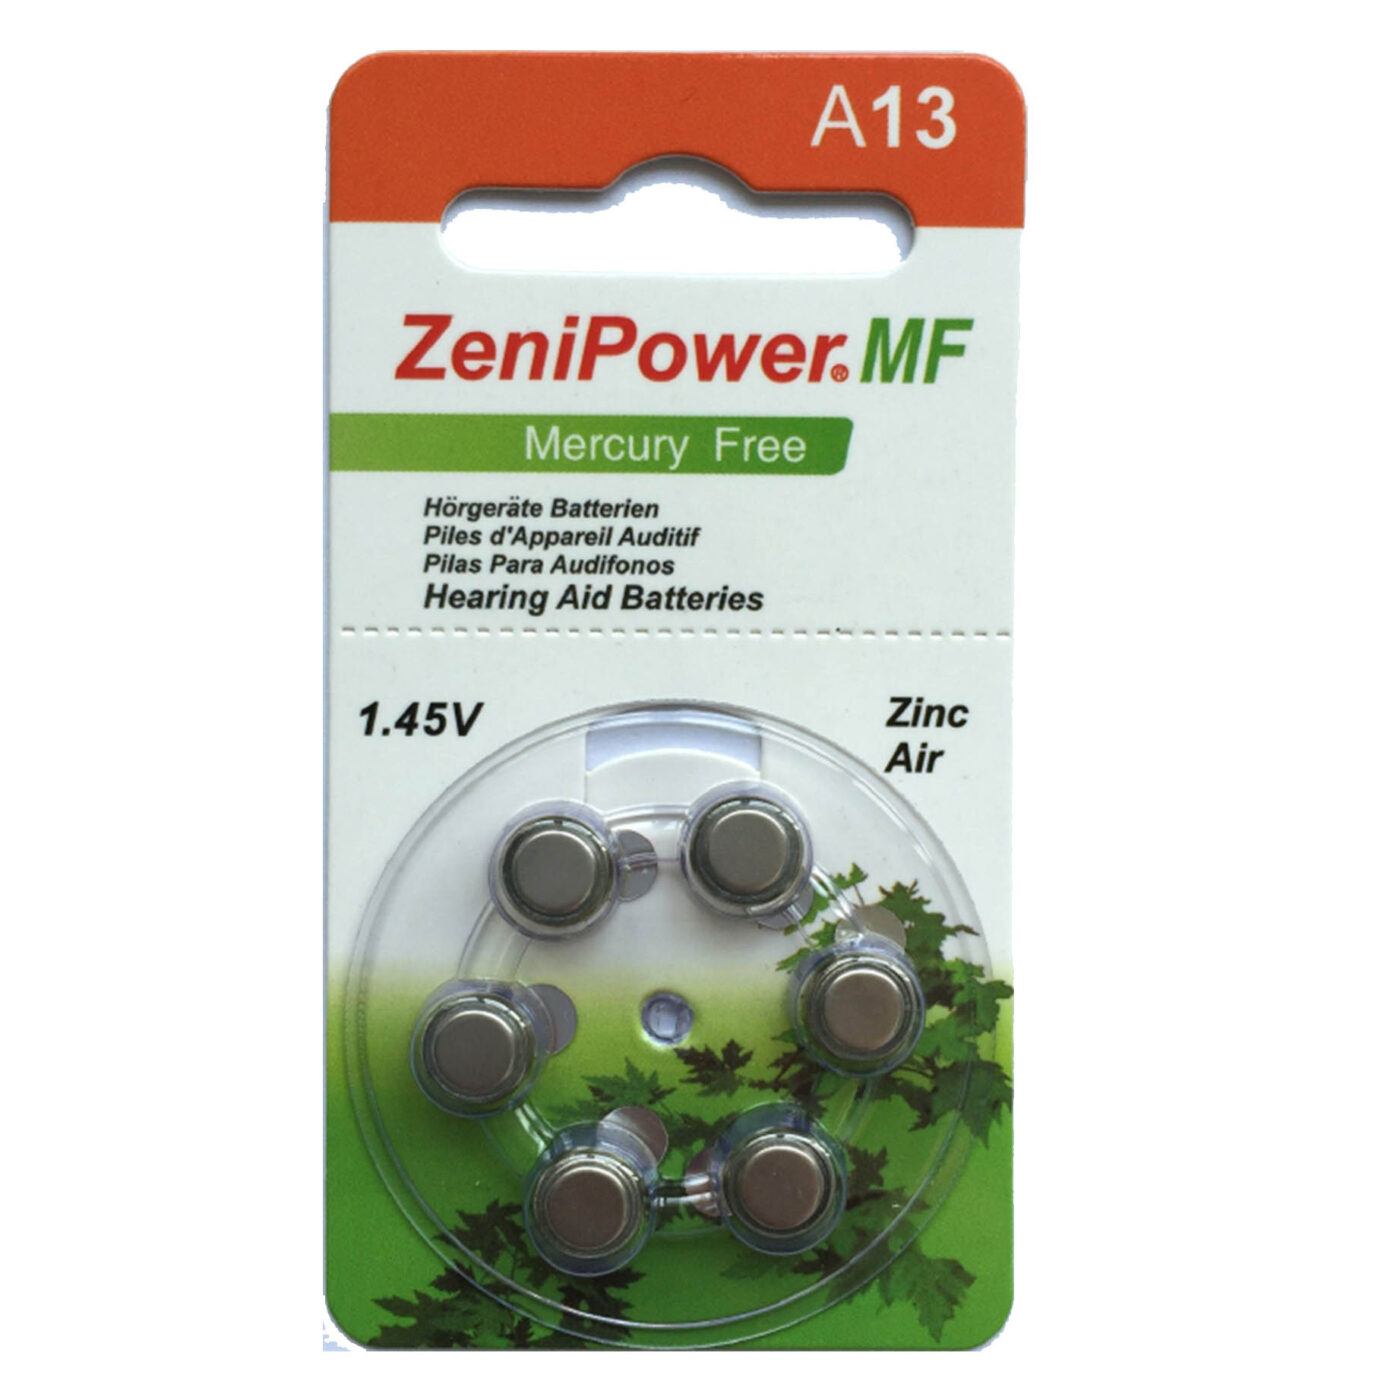 סוללות למכשירי שמיעה 13 ZeniPower